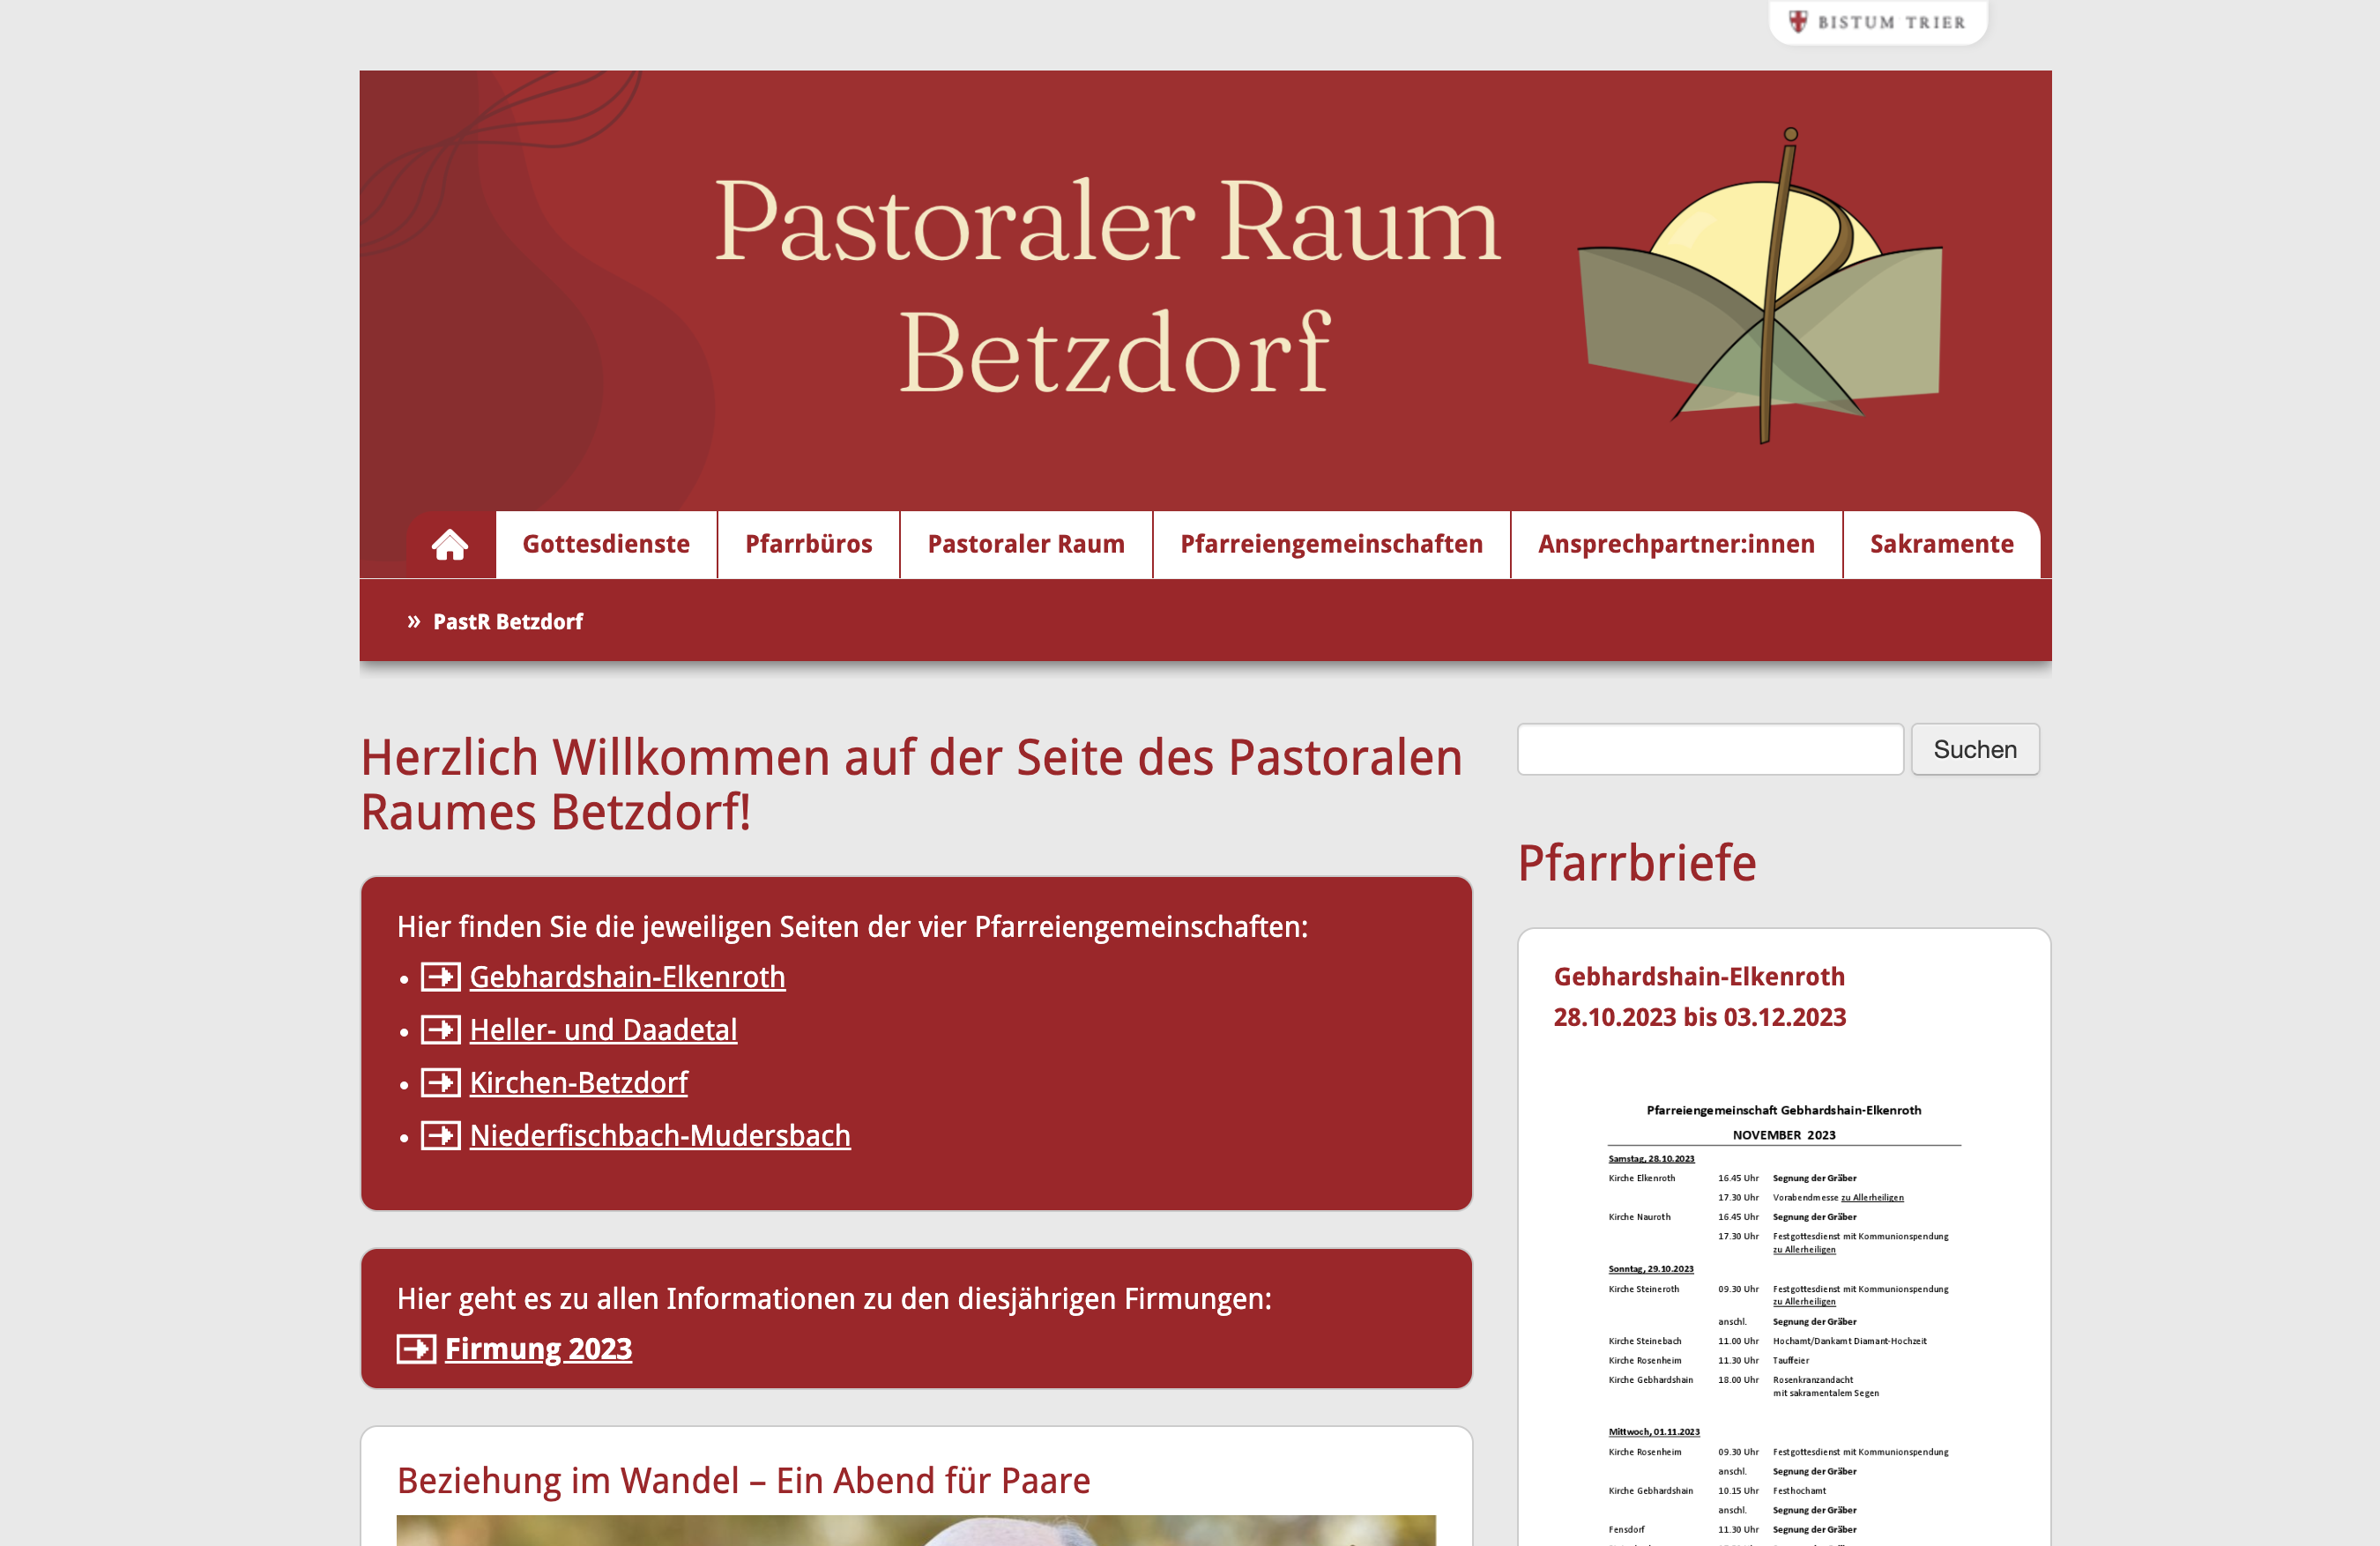 Vorherige Webseite des Pastoralen Raum Betzdorf